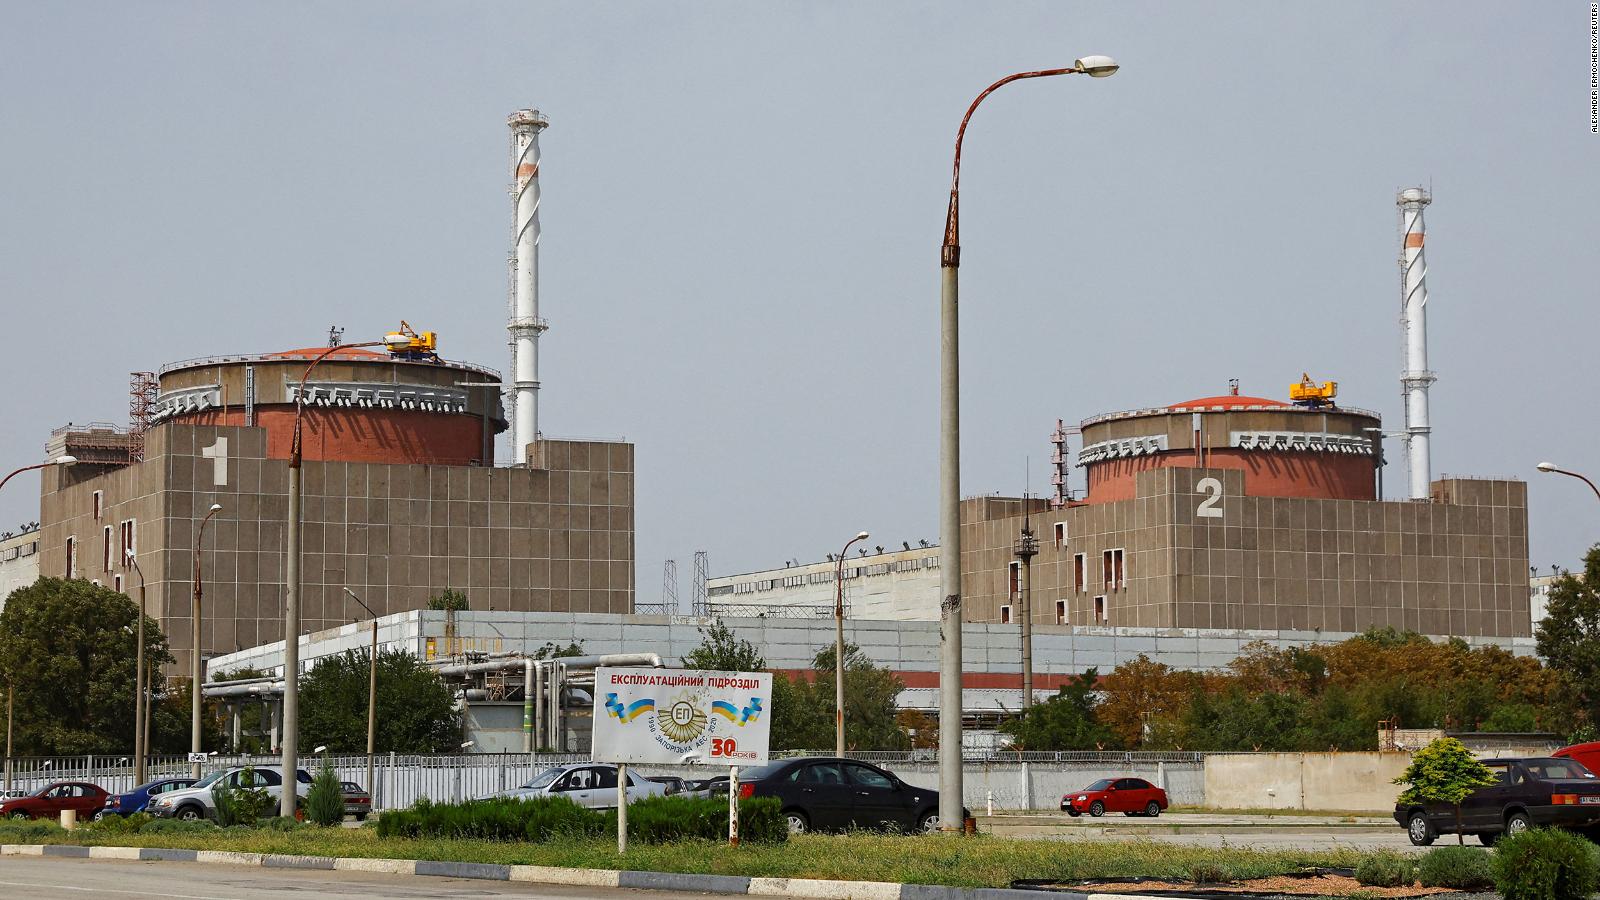 Etter den historiske frakoblingen kobles atomkraftverket Zaporizhia til strømnettet igjen og mer siste nytt her